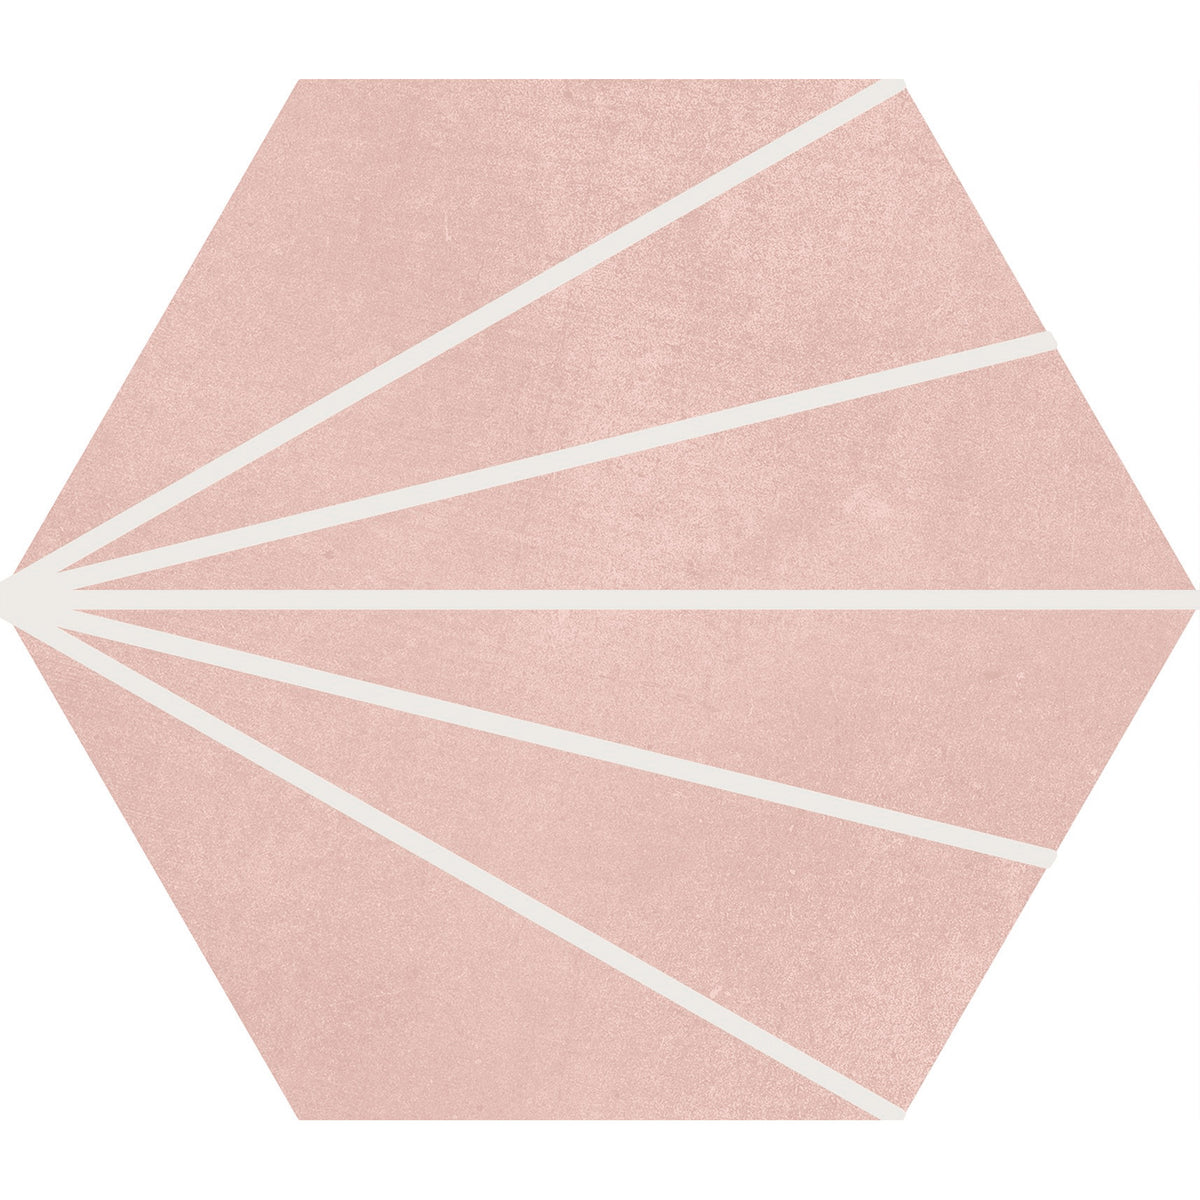 Soci Tile - Aura Decor Hexagon 9&quot; x 10&quot; Porcelain Tile - Blush